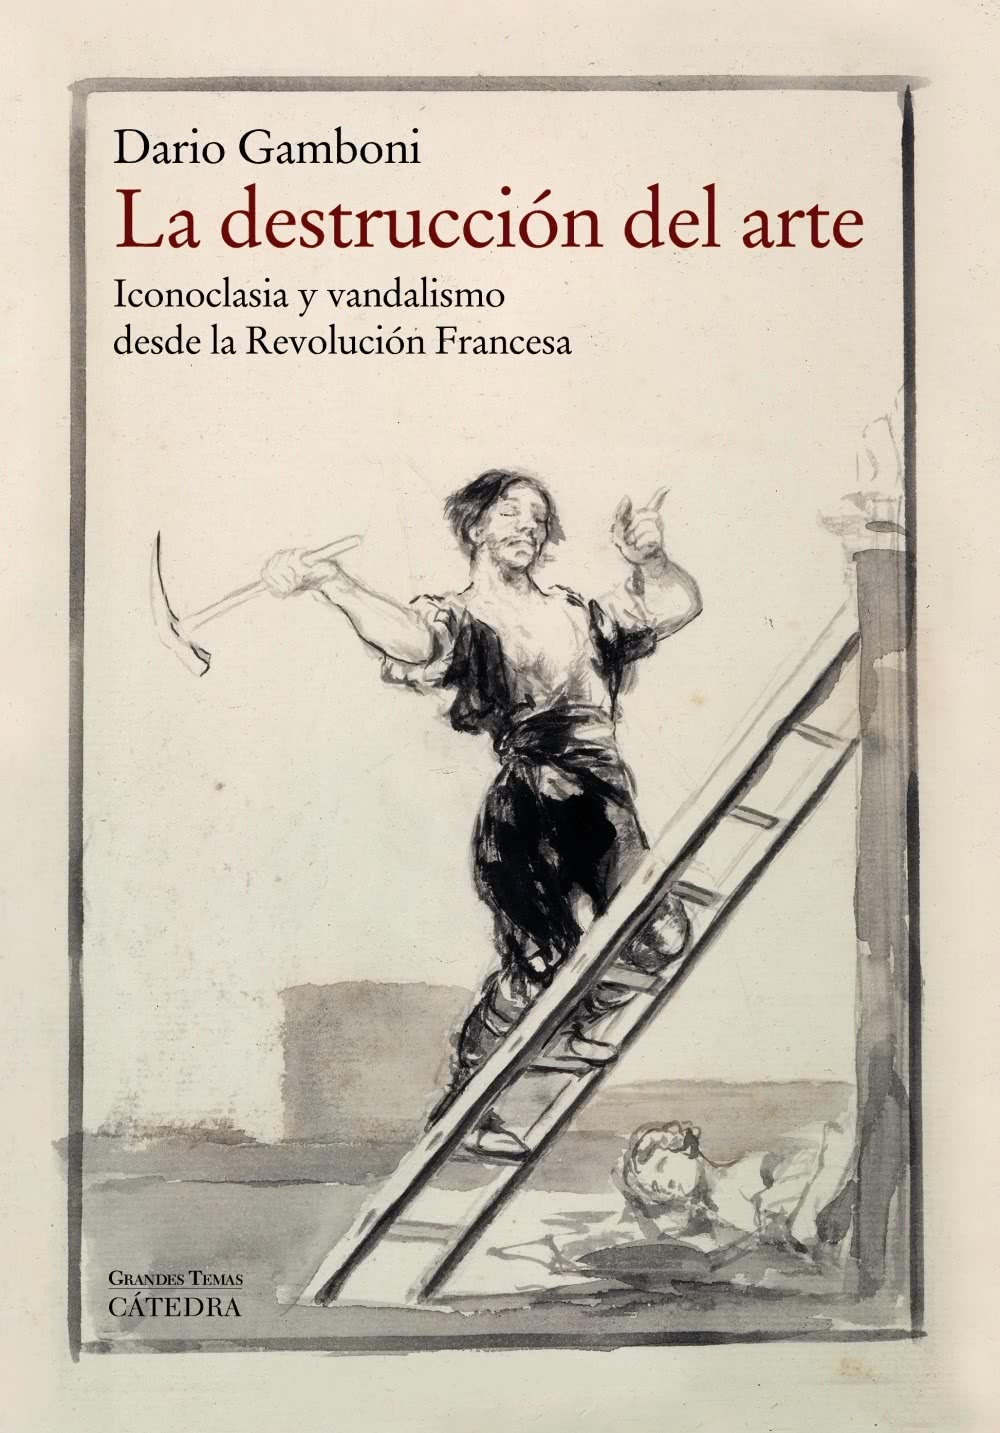 Las destrucción del arte. Dario Gamboni